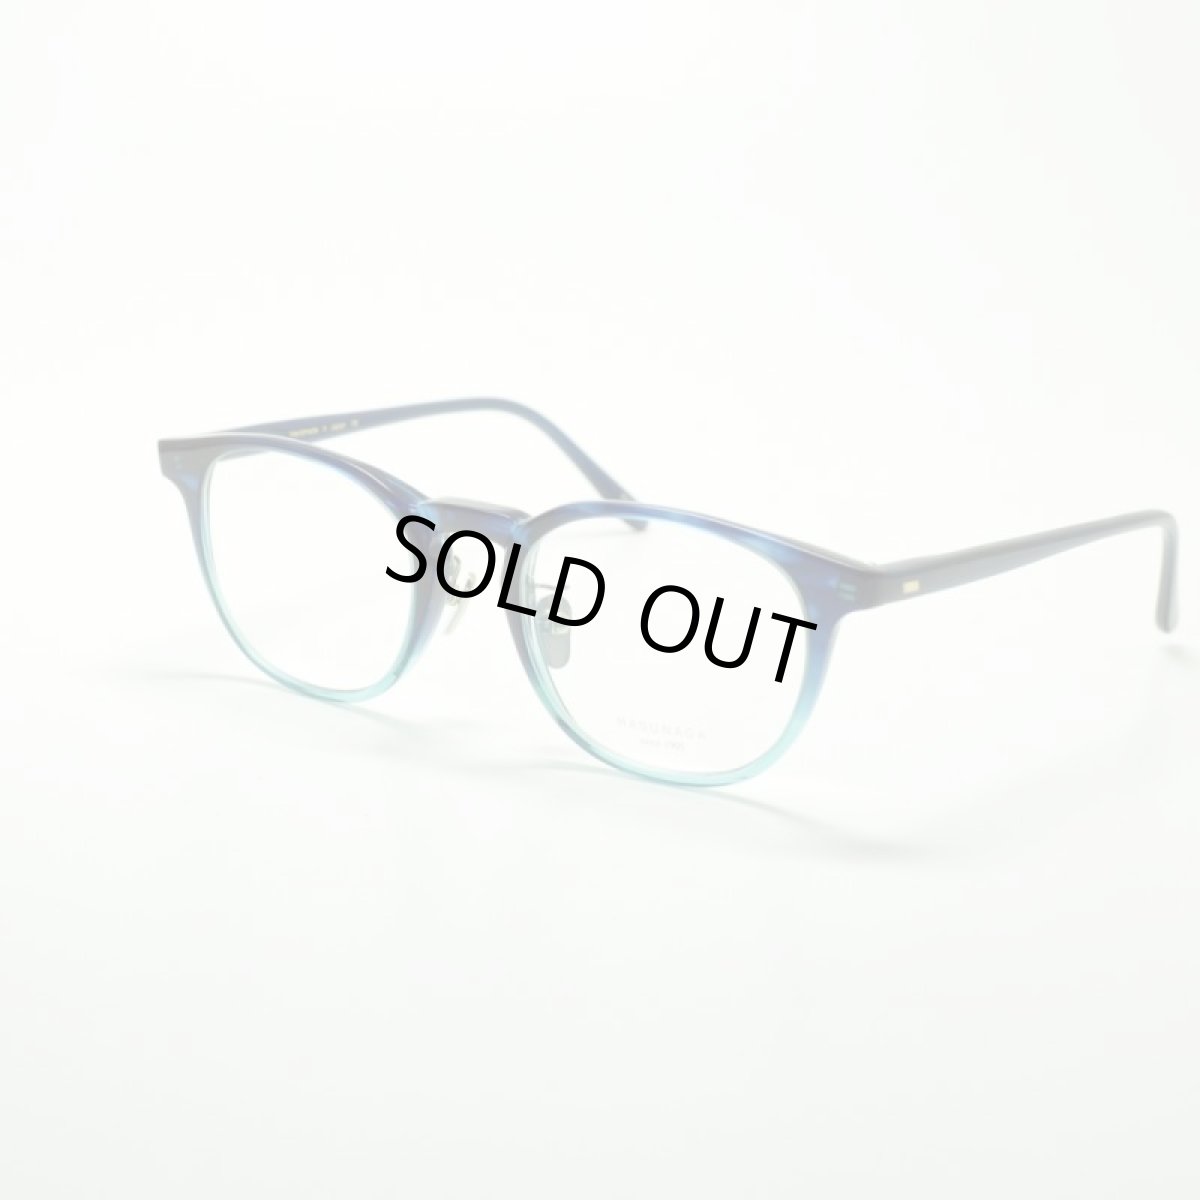 画像1: MASUNAGA GMS-07 col-45 DBL/SBL メガネ 眼鏡 めがね メンズ レディース おしゃれ ブランド 人気 おすすめ フレーム 流行り 度付き レンズ (1)